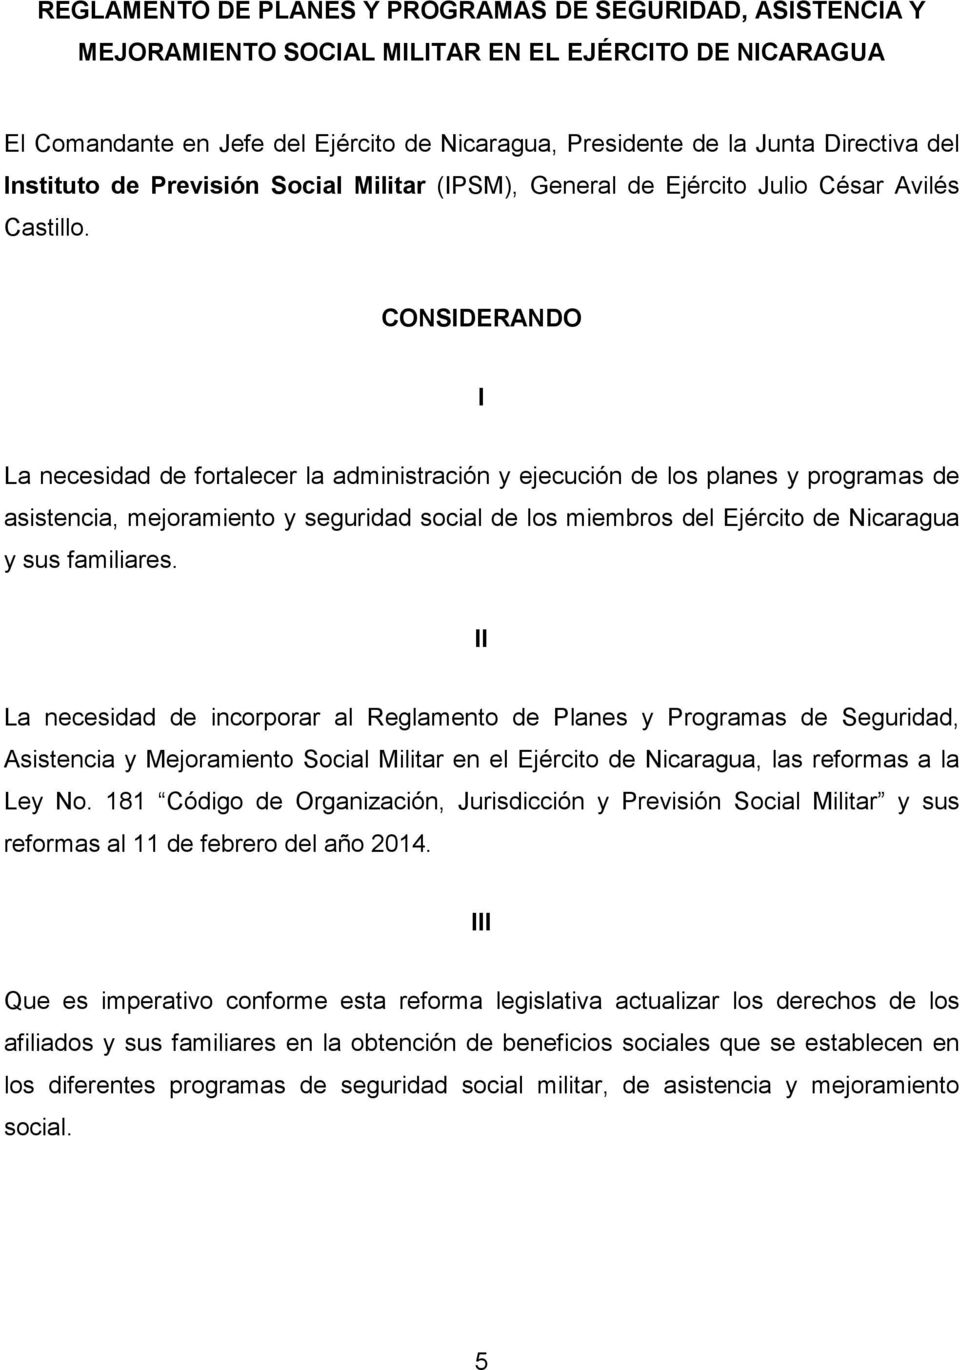 CONSIDERANDO I La necesidad de fortalecer la administración y ejecución de los planes y programas de asistencia, mejoramiento y seguridad social de los miembros del Ejército de Nicaragua y sus